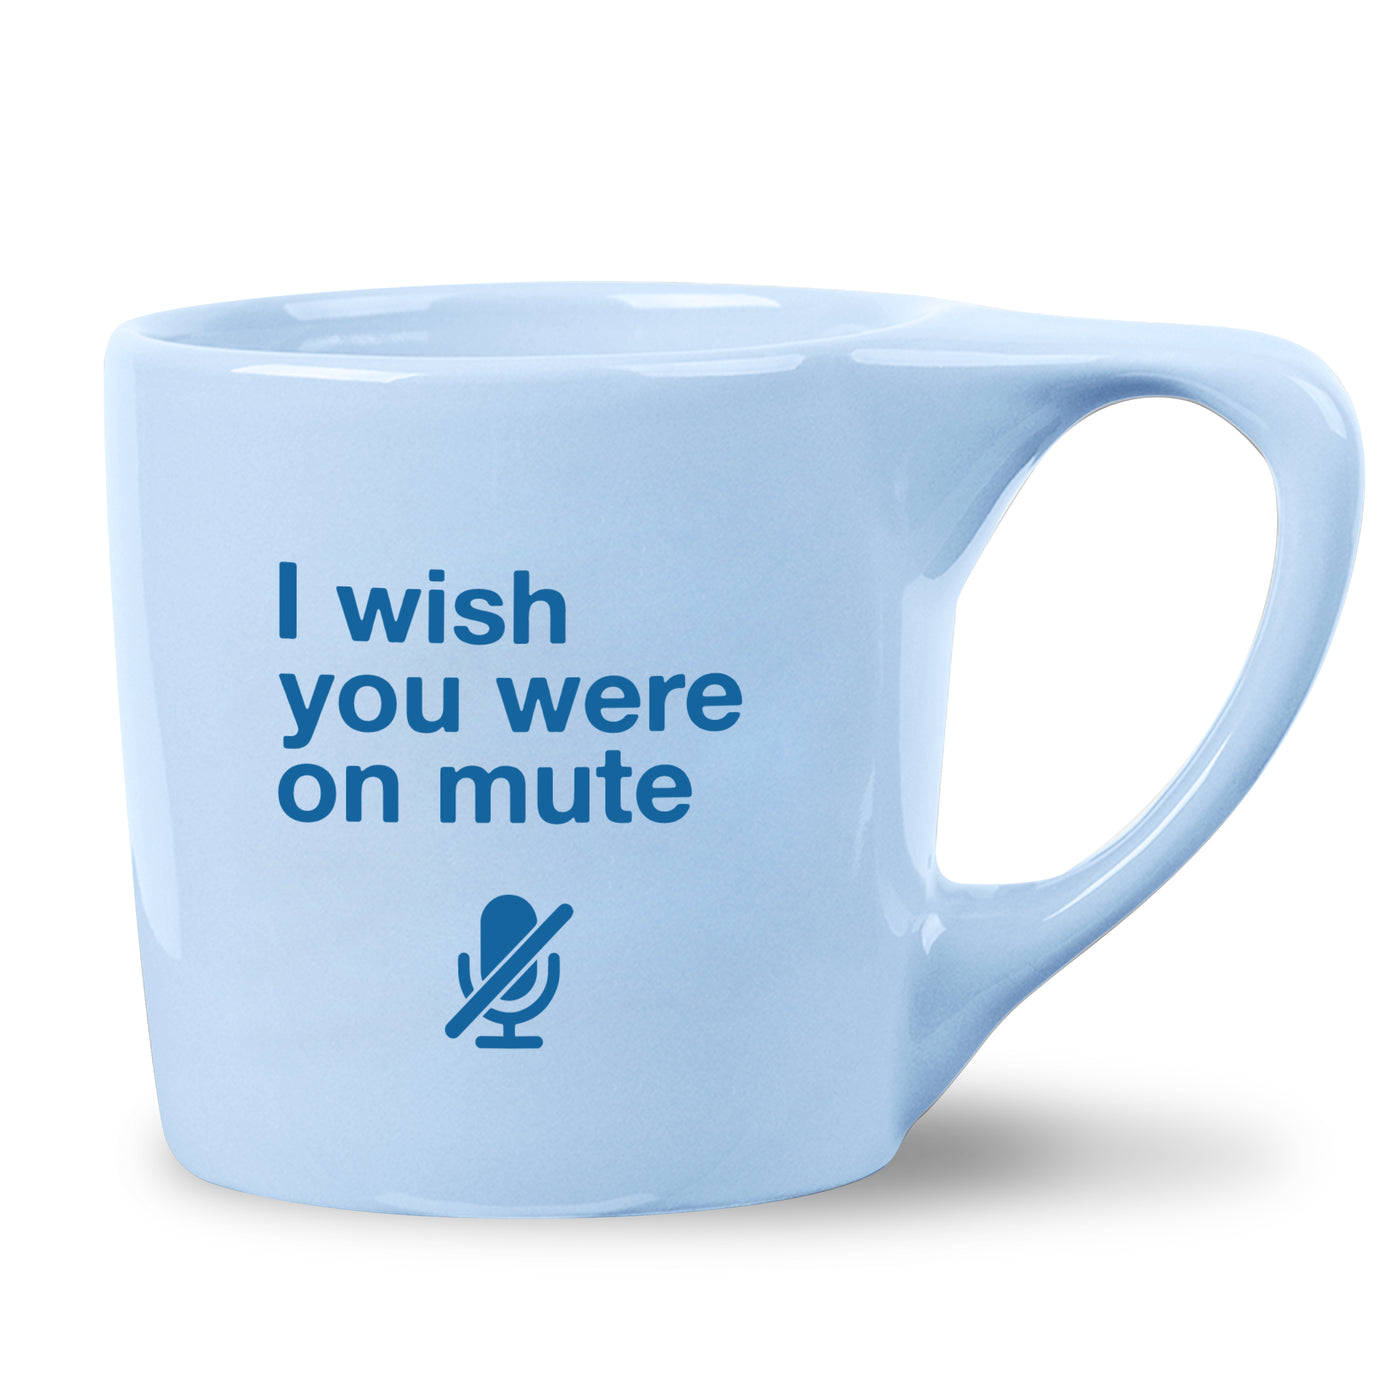 On Mute Mug